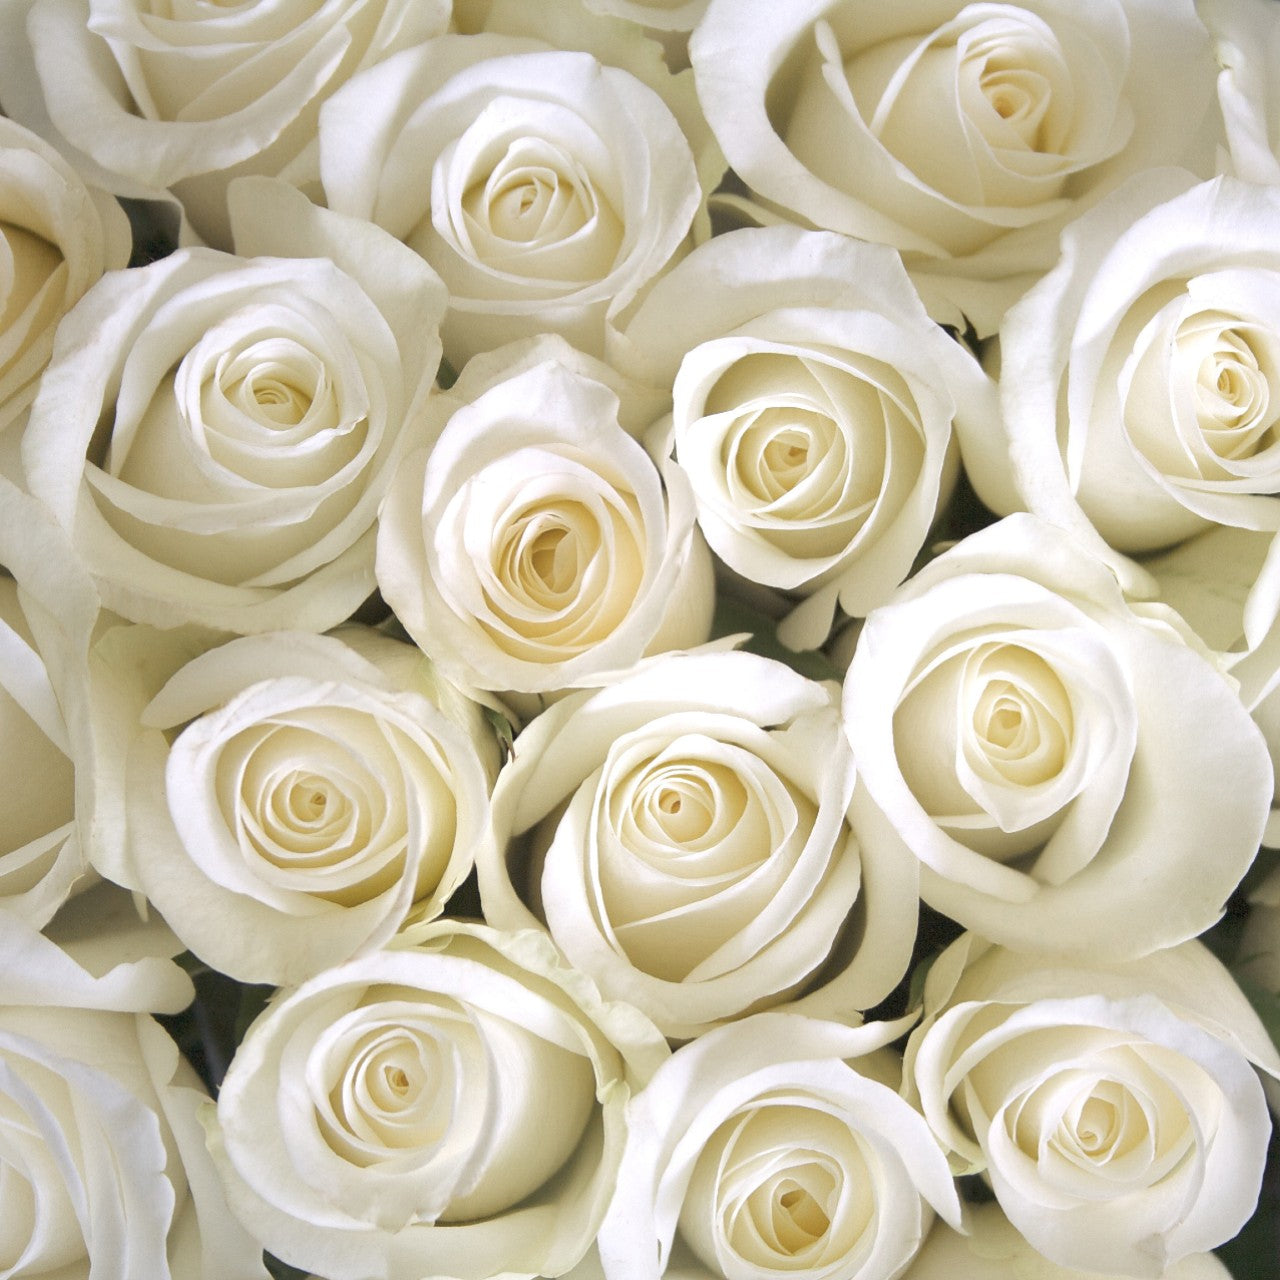 Zeta Phi Beta - White Roses, 40cm